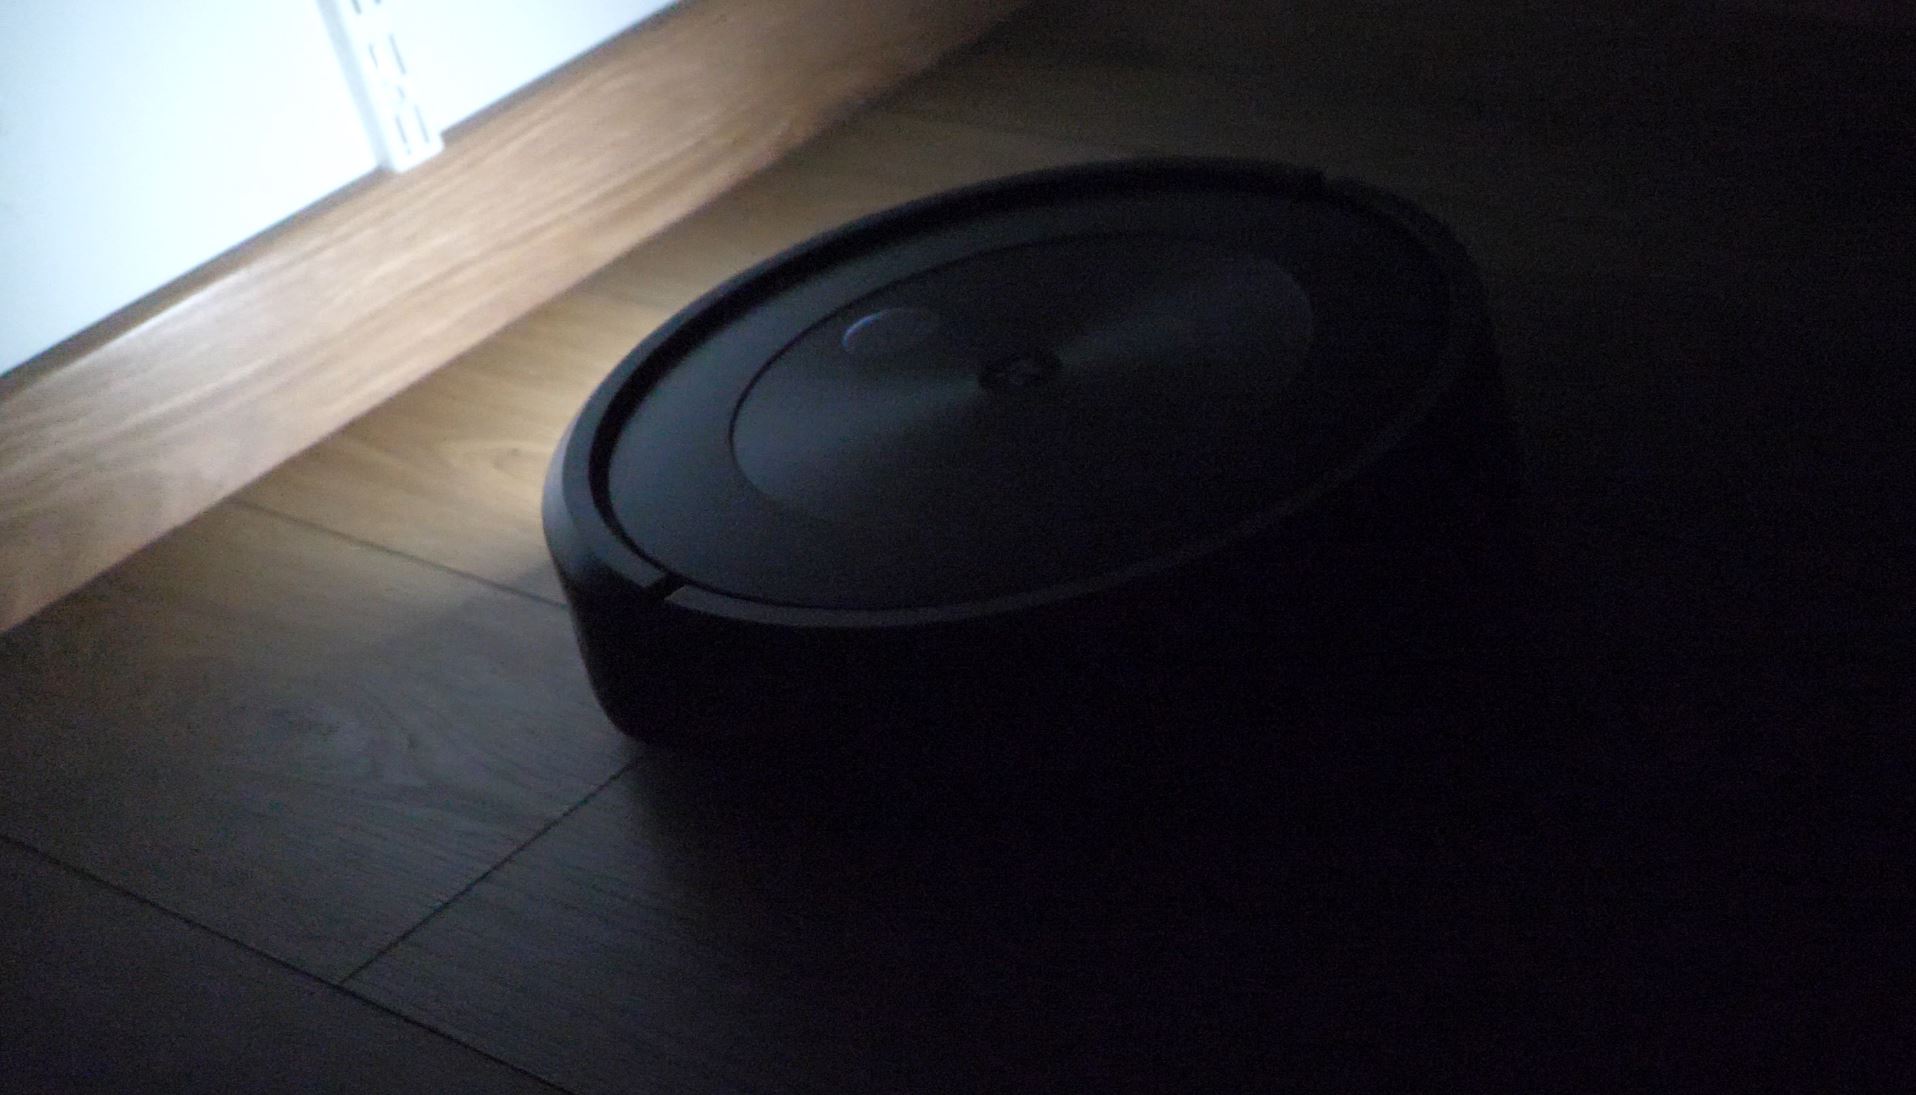 iRobot Roomba w ciemności